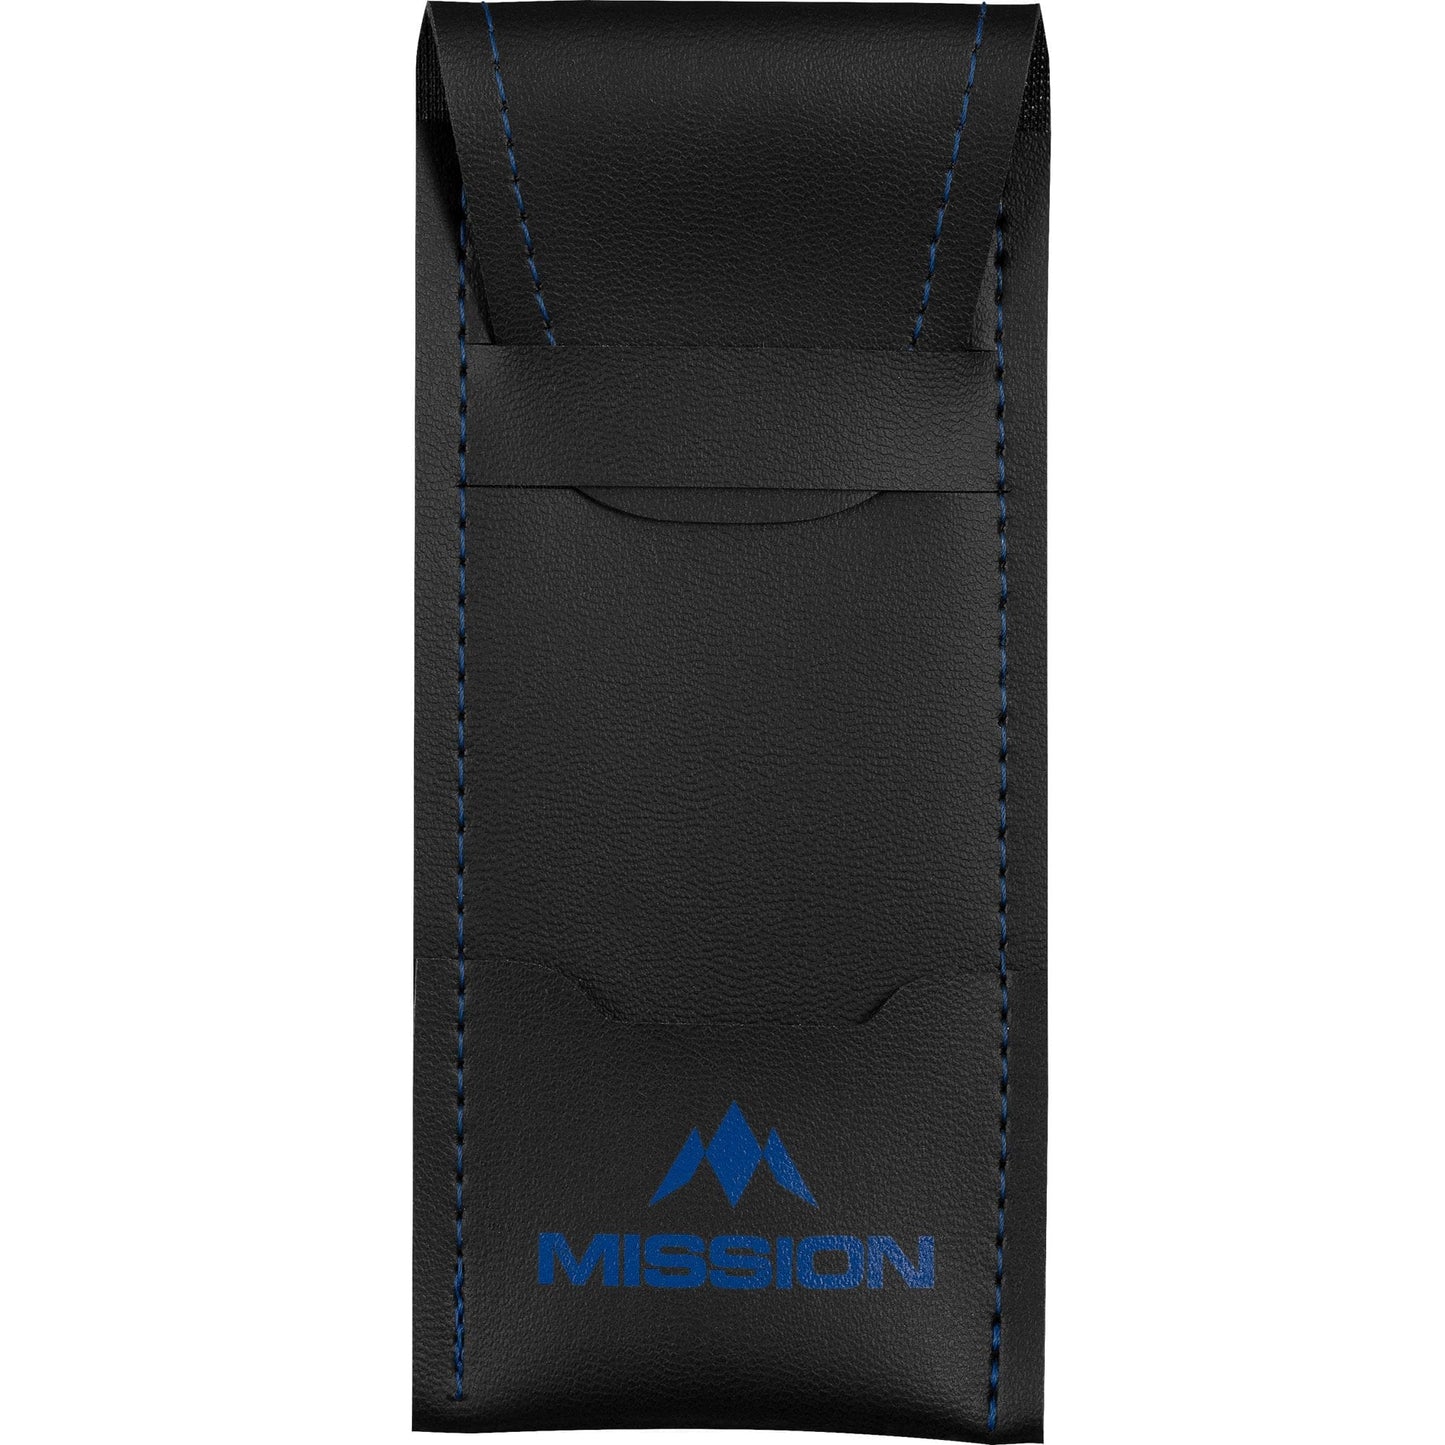 Mission Sport 8 Darts Case - Black Bar Wallet with Trim Blue